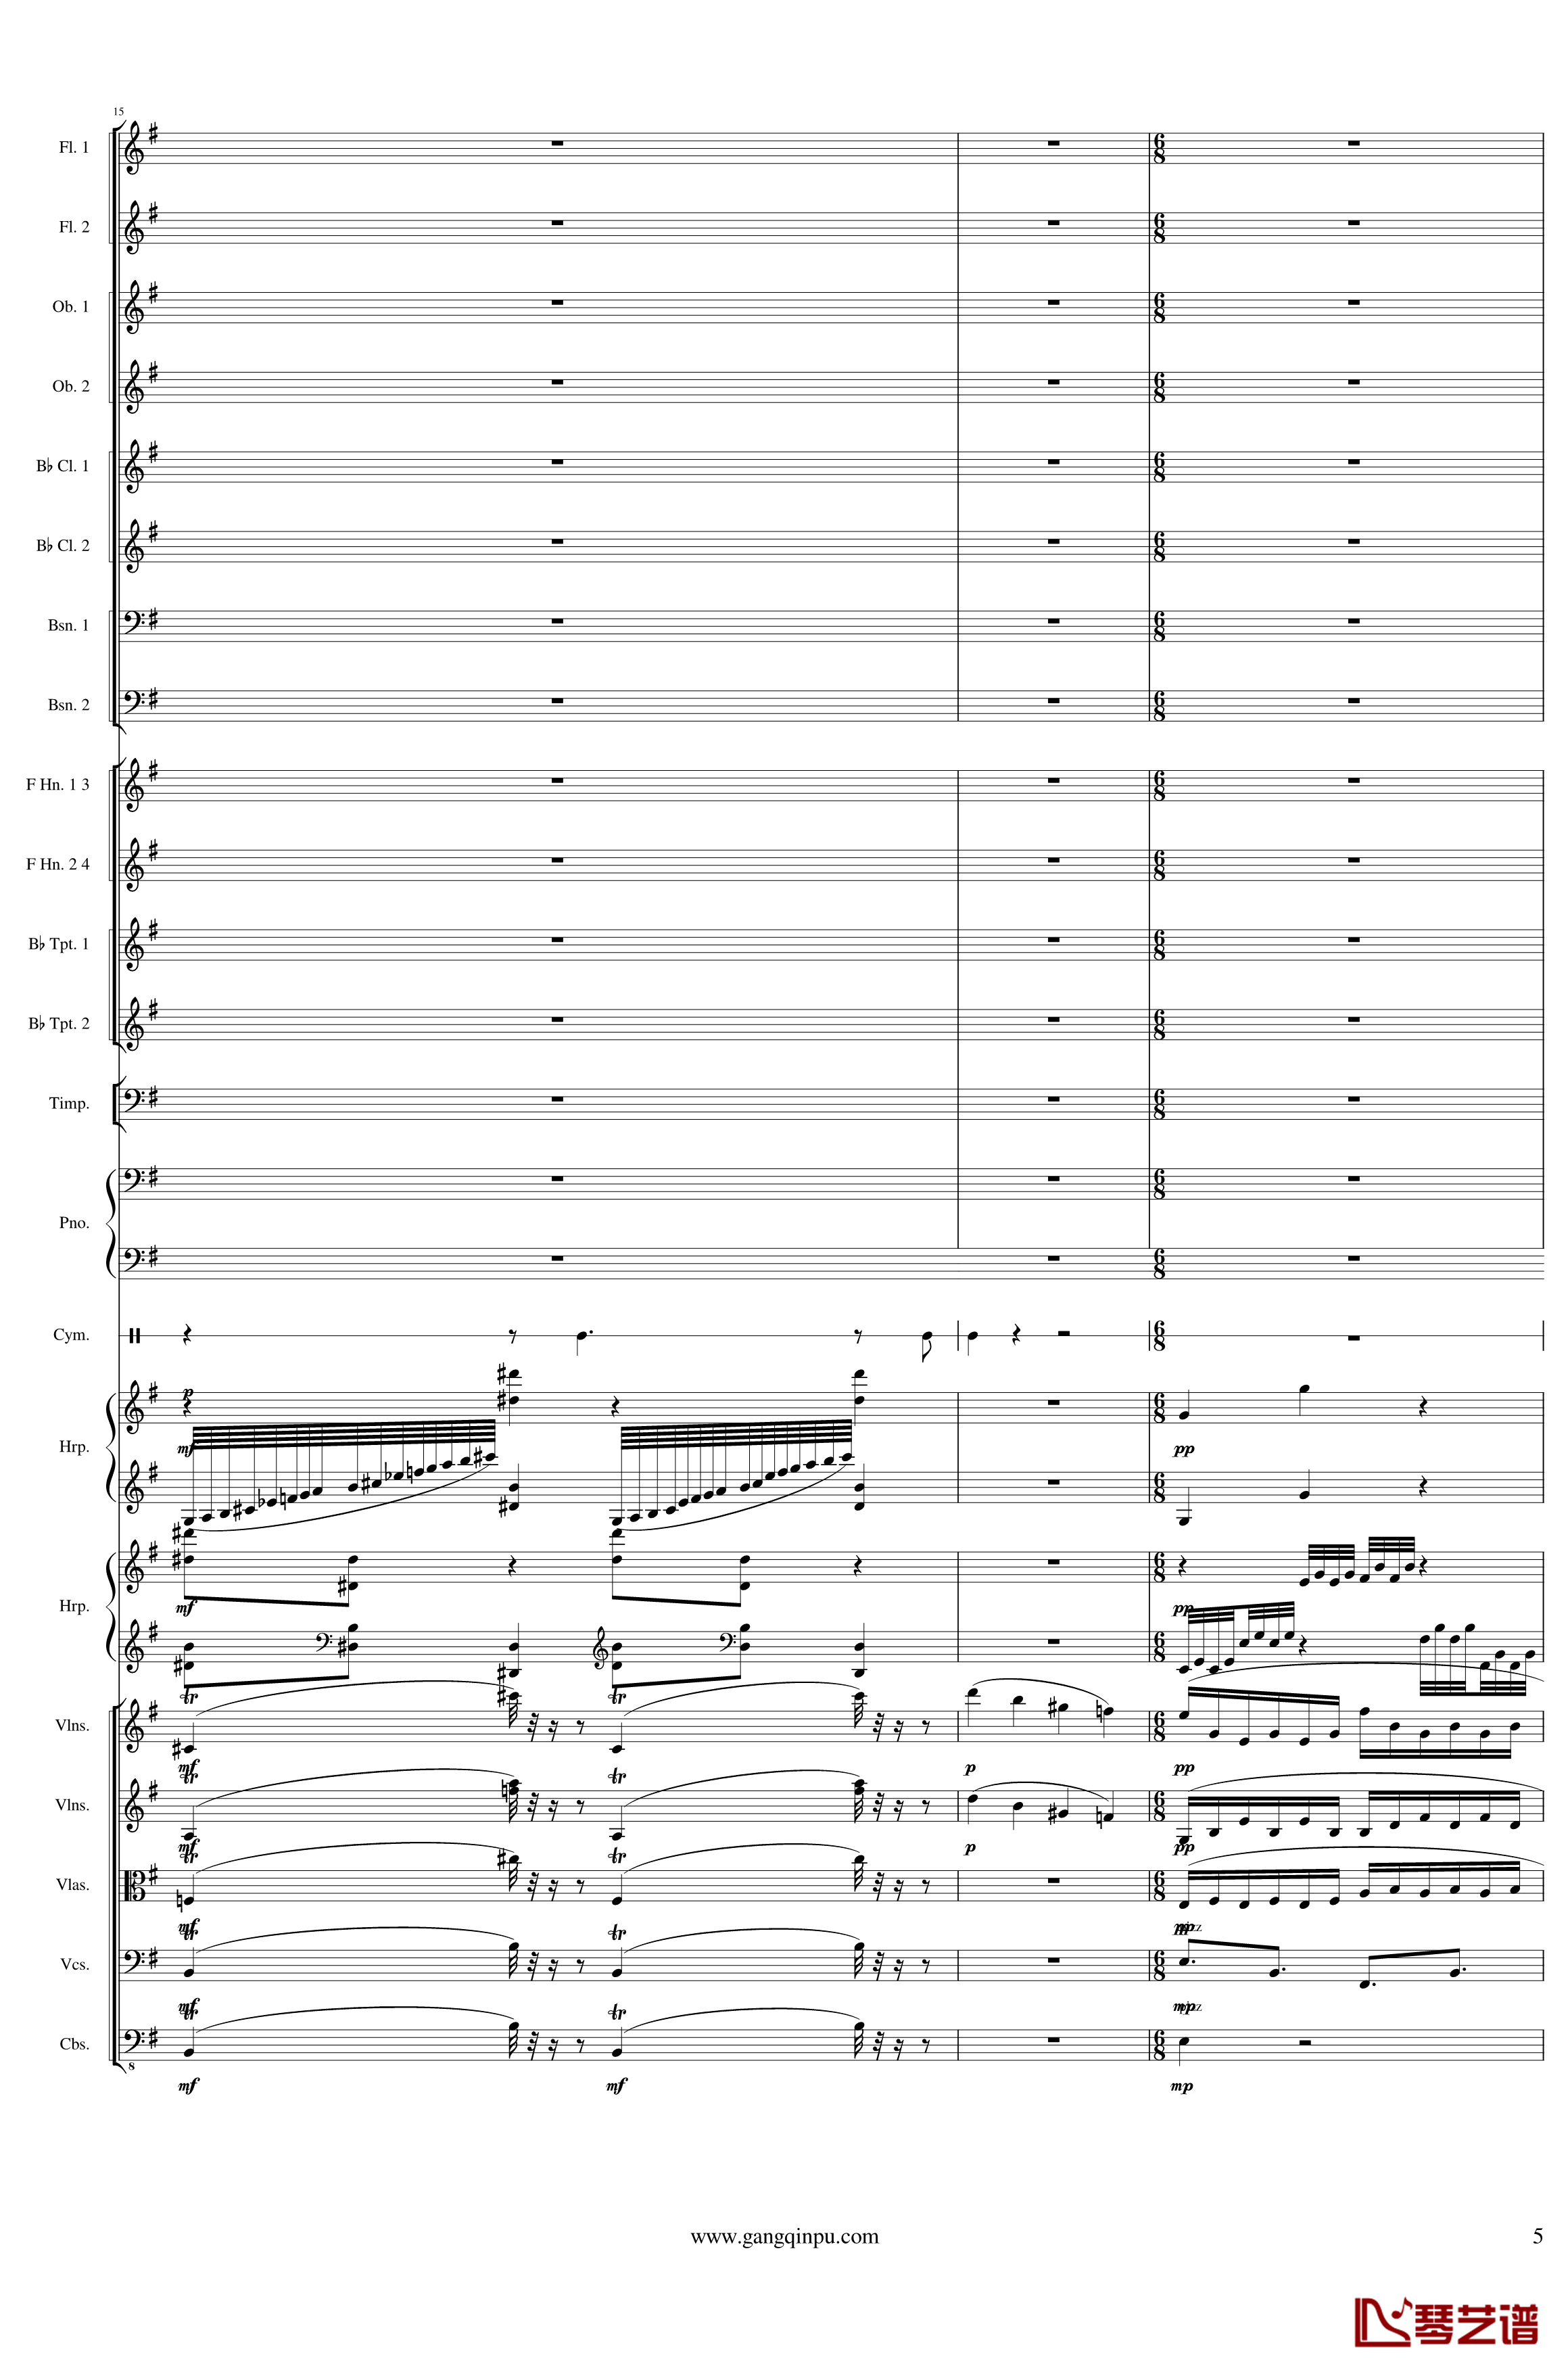 Symphonic Poem No.3, Op.91 Part 2钢琴谱-一个球5